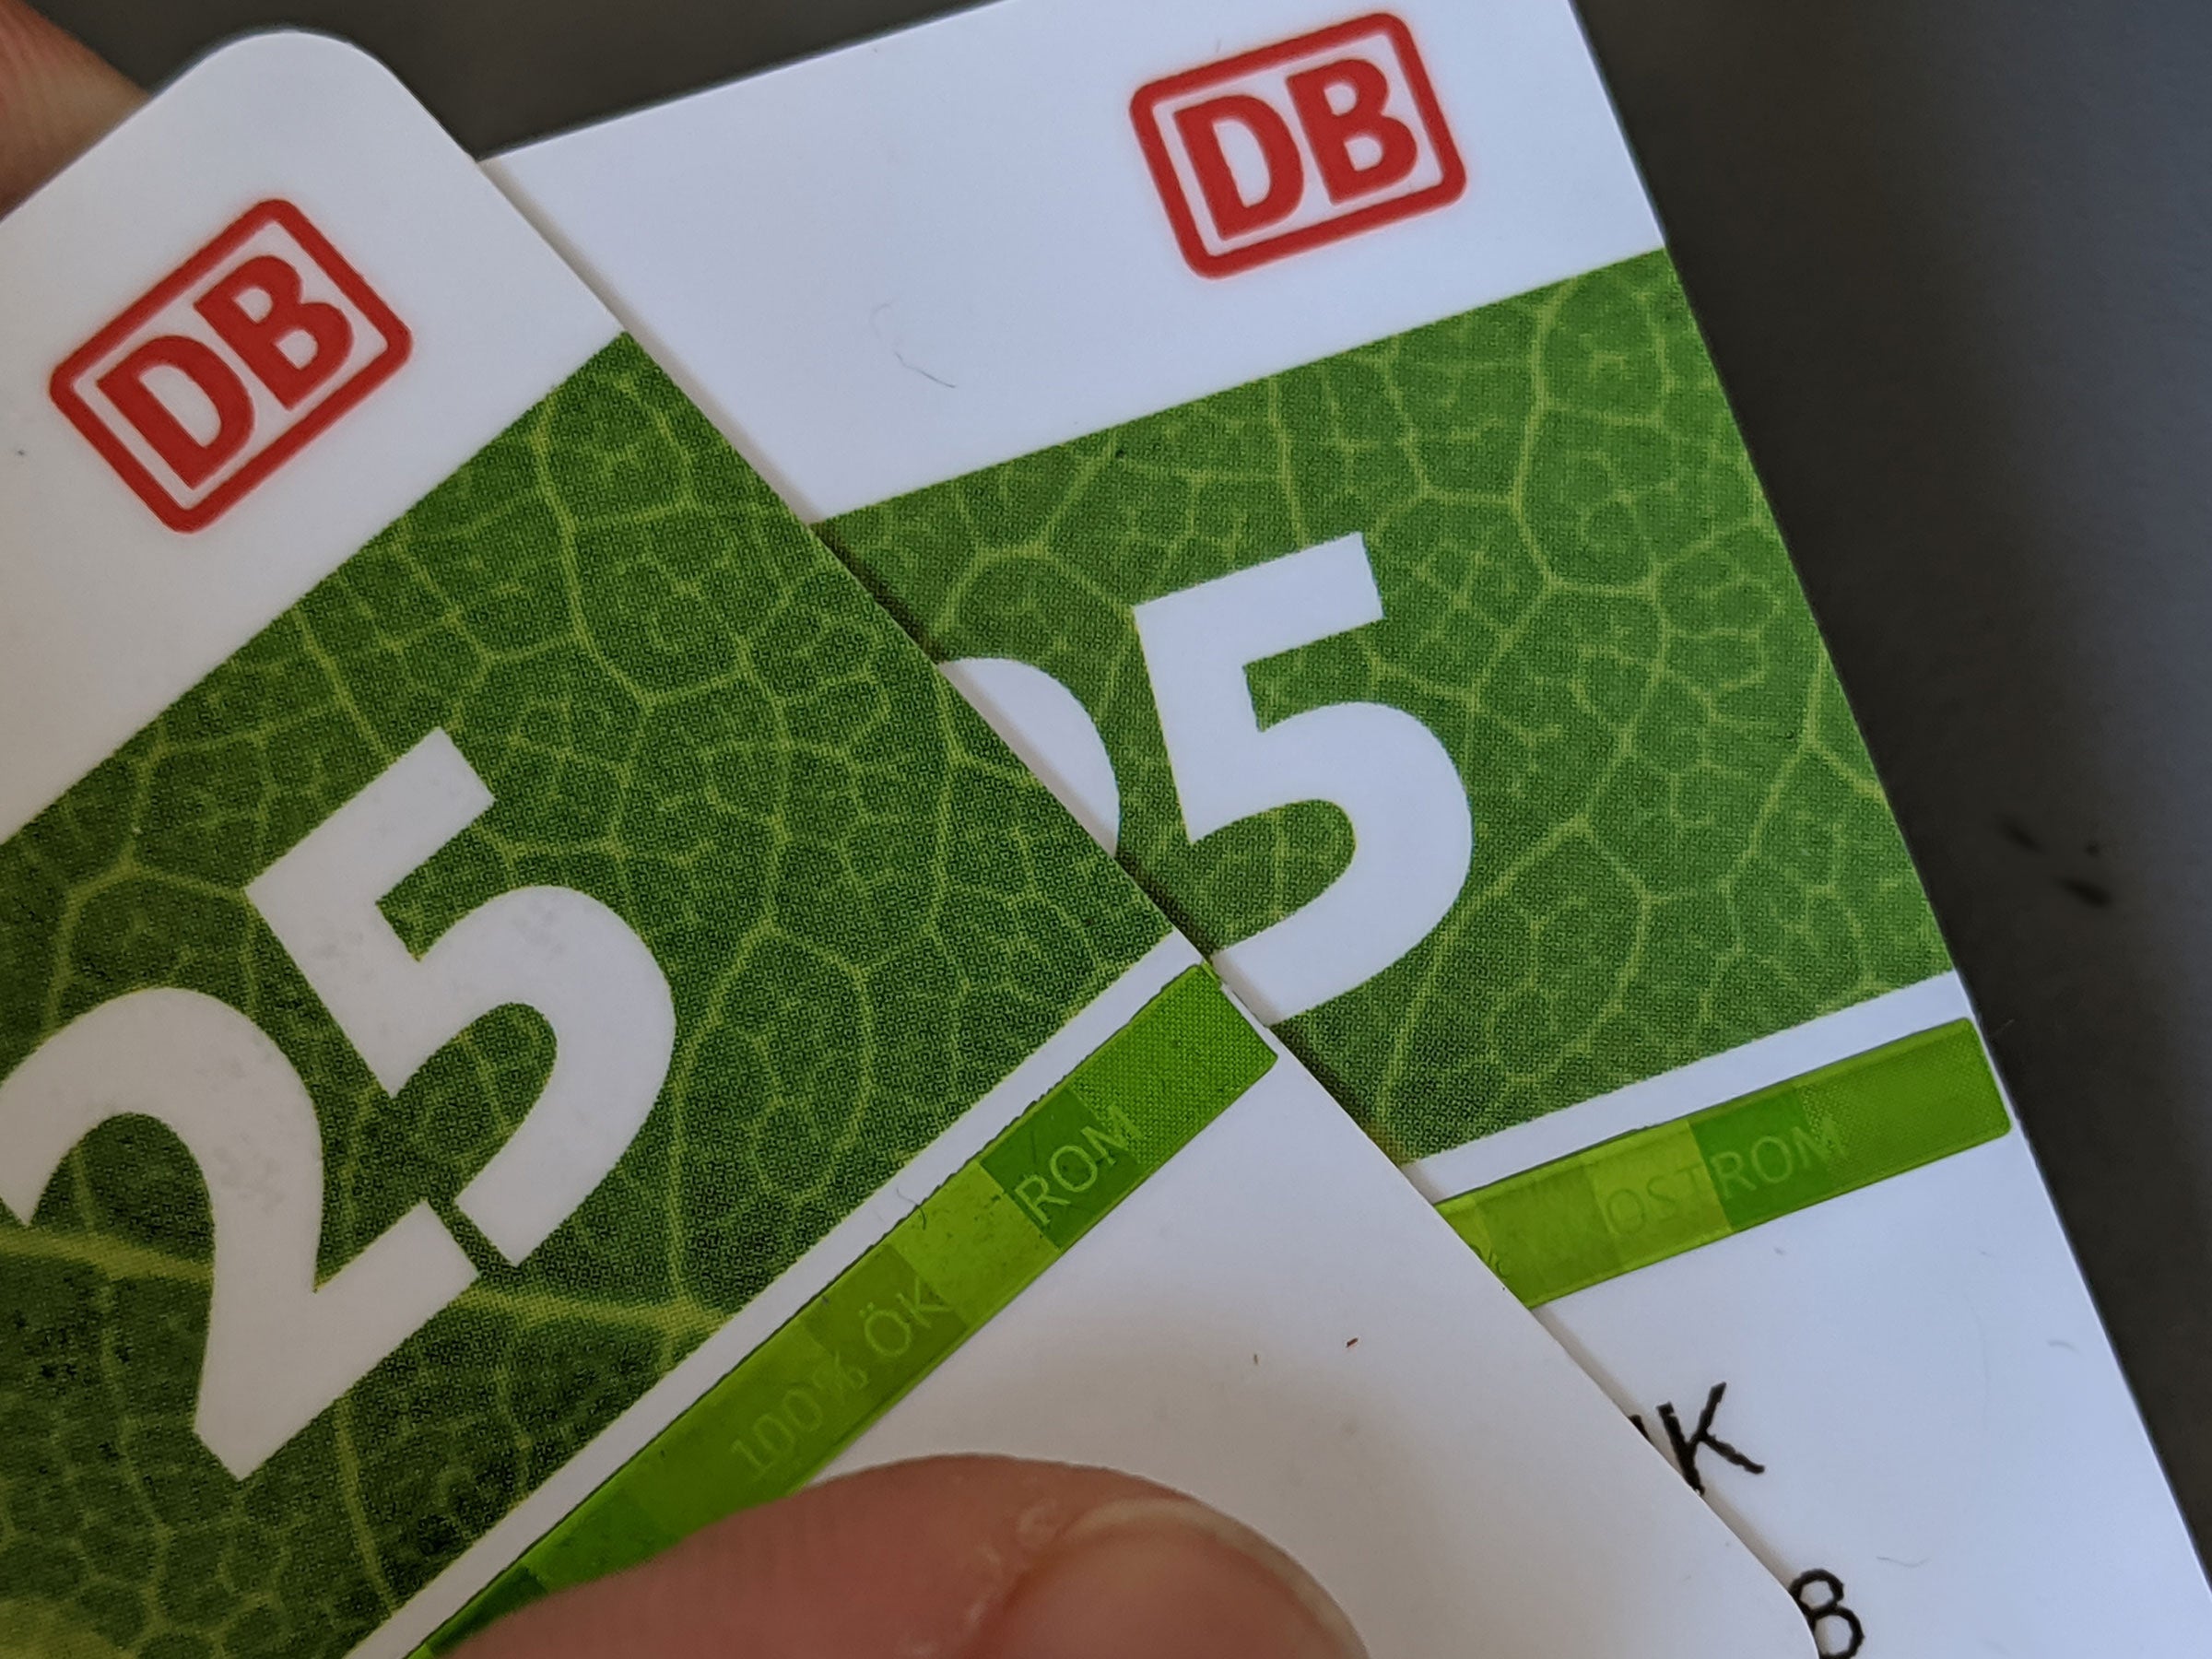 #Deutsche Bahn streicht Partner-Bahncard – das ist die irre Begründung